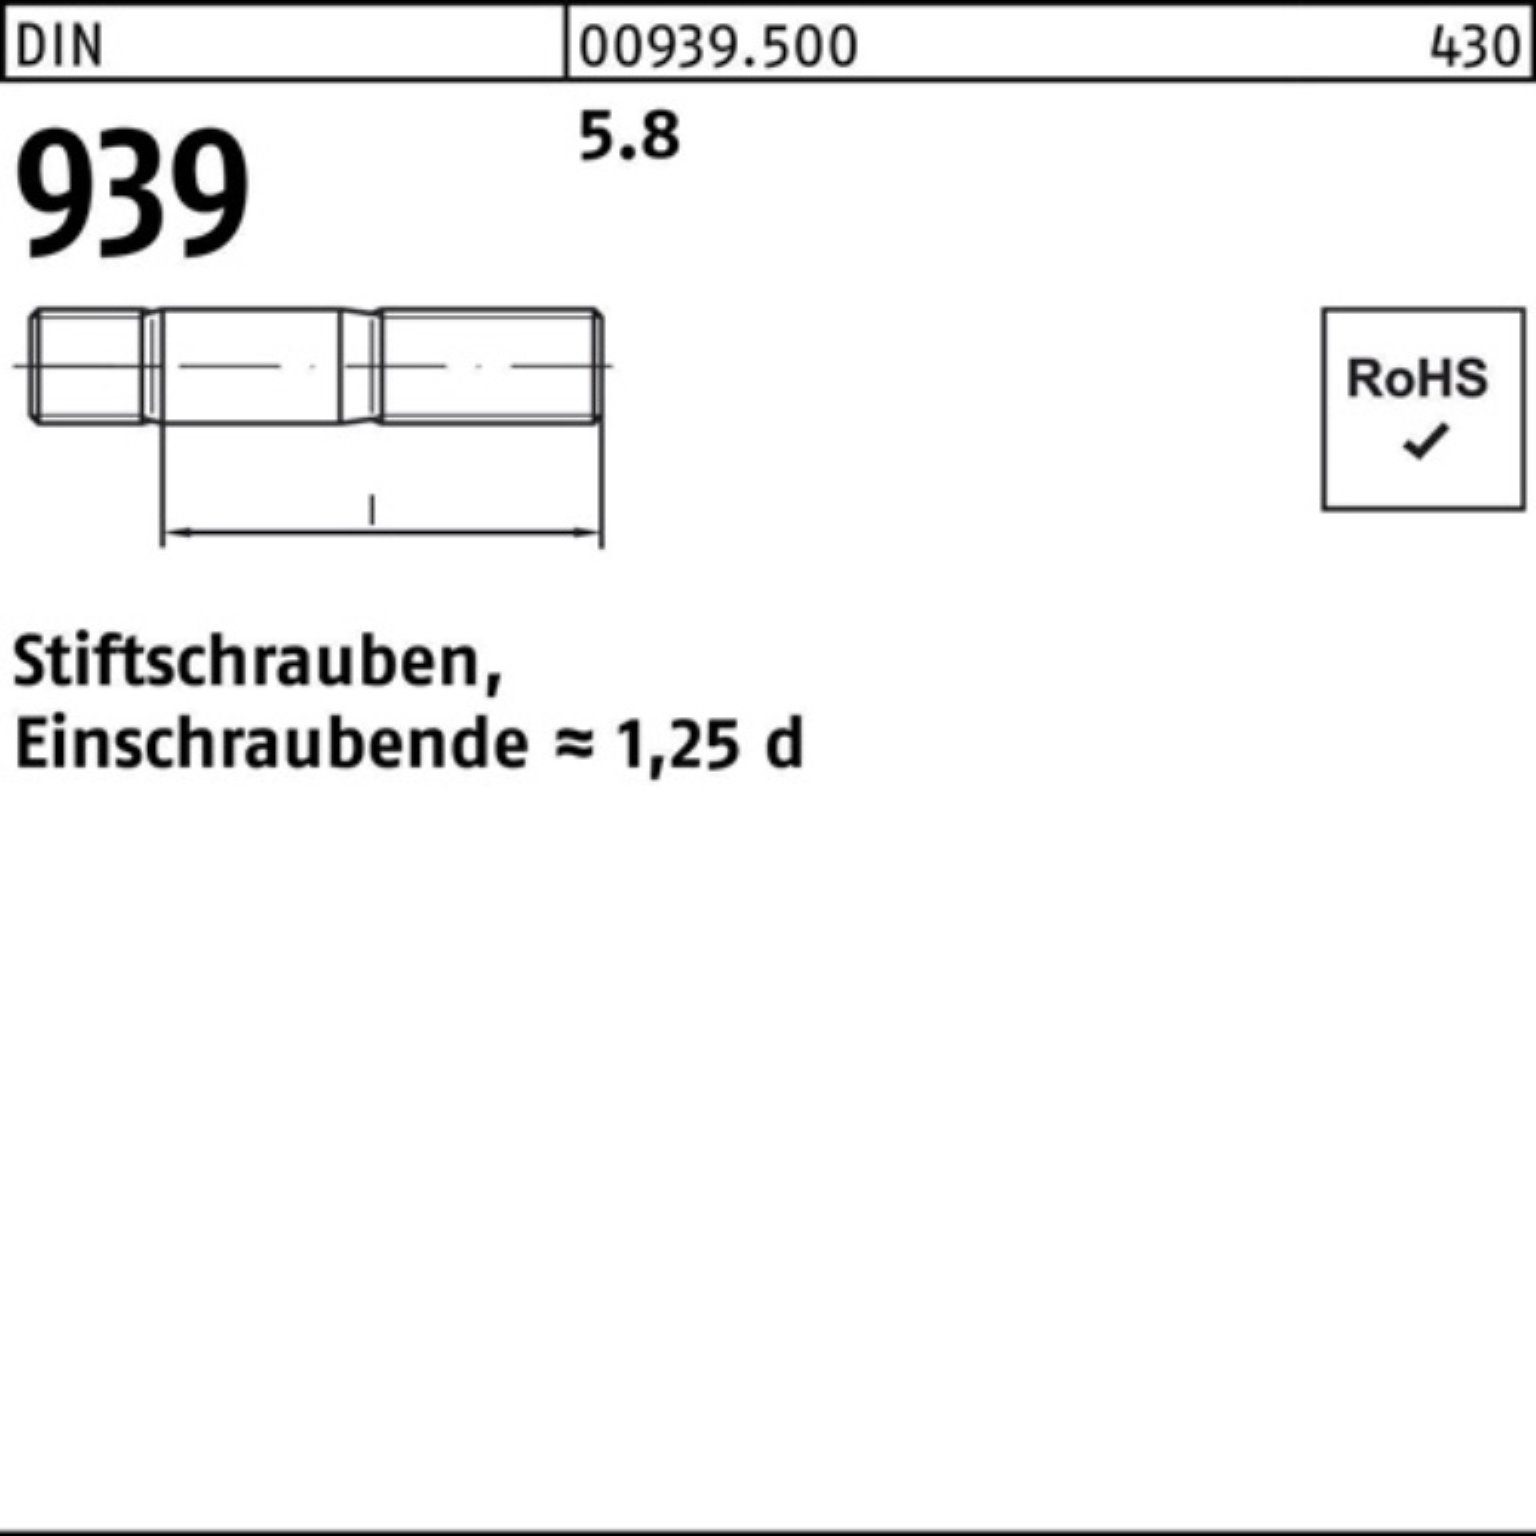 Stiftschraube 939 110 50 Stiftschraube 100er DIN Einschraubende=1,25d Reyher Pack M10x 5.8